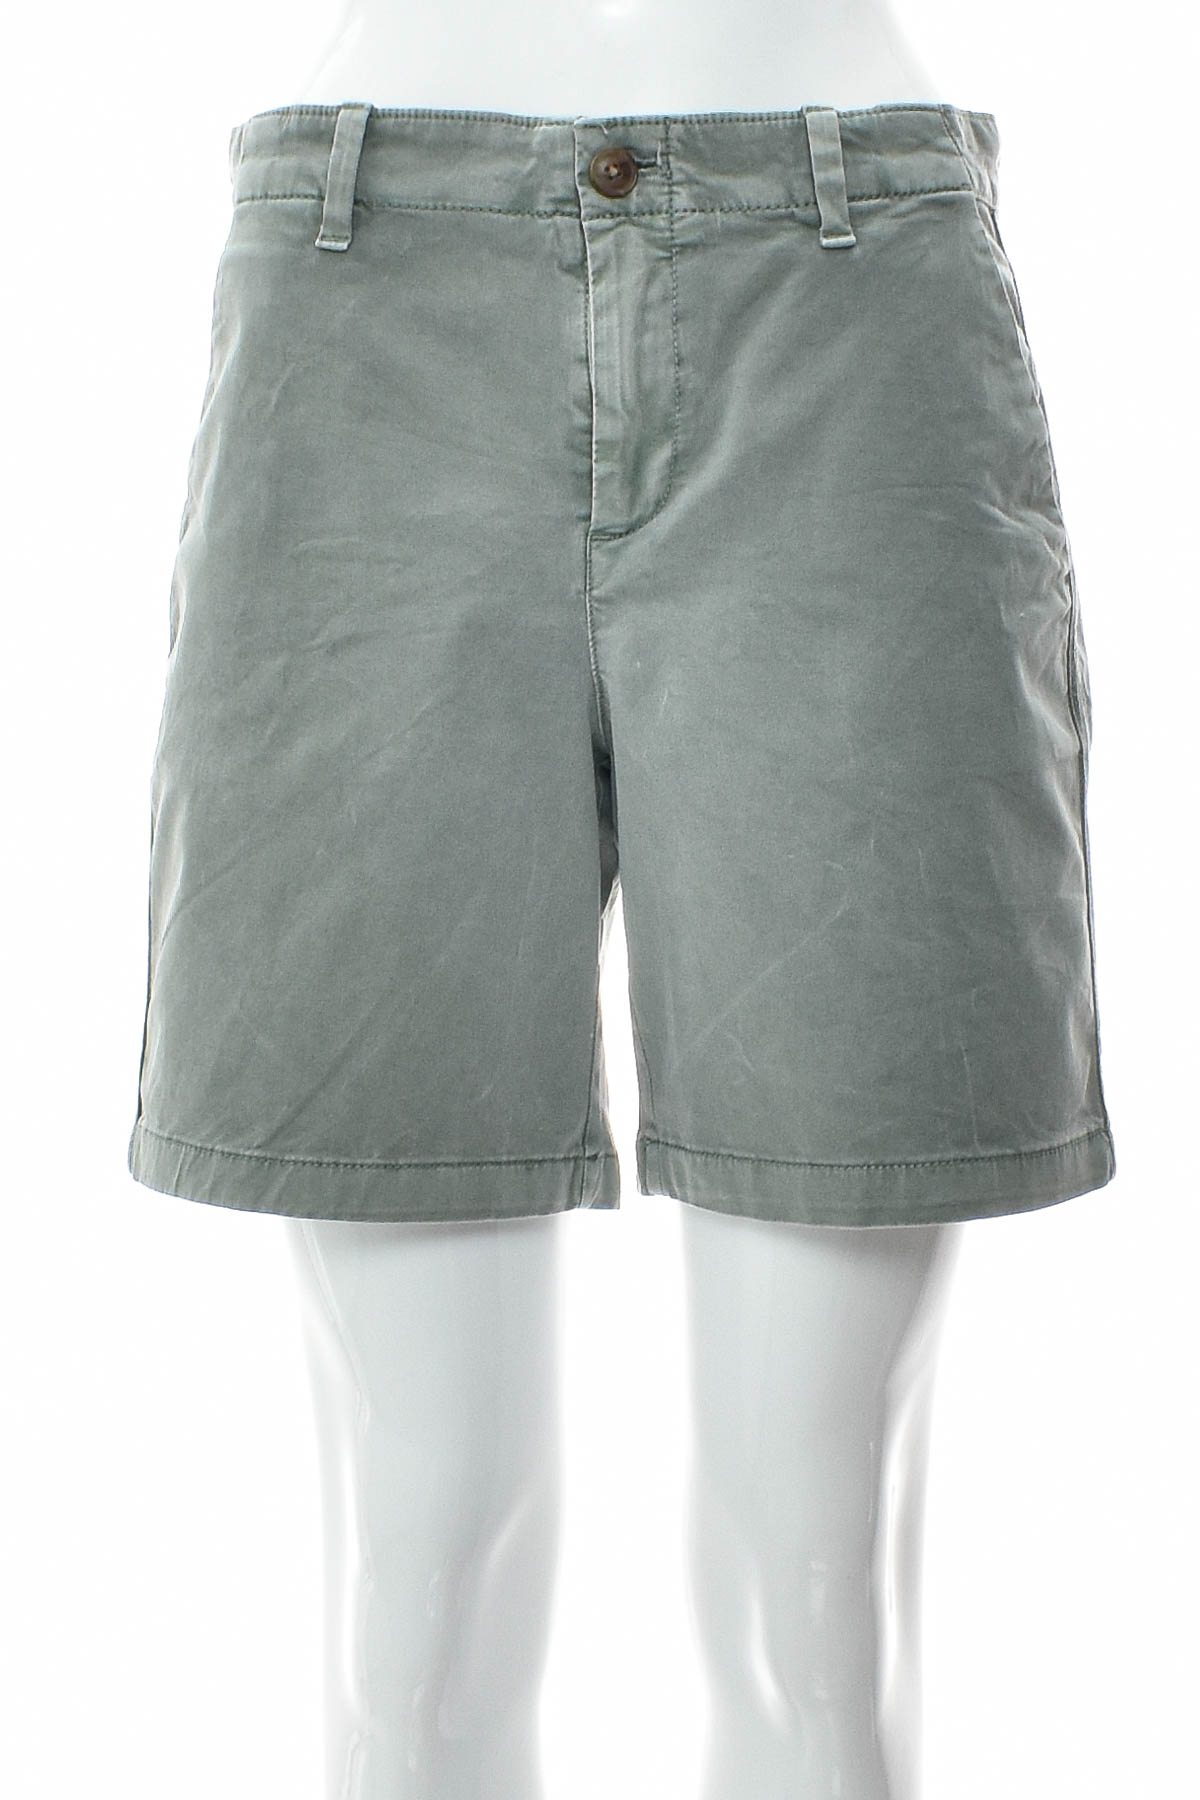 Female shorts - GAP - 0